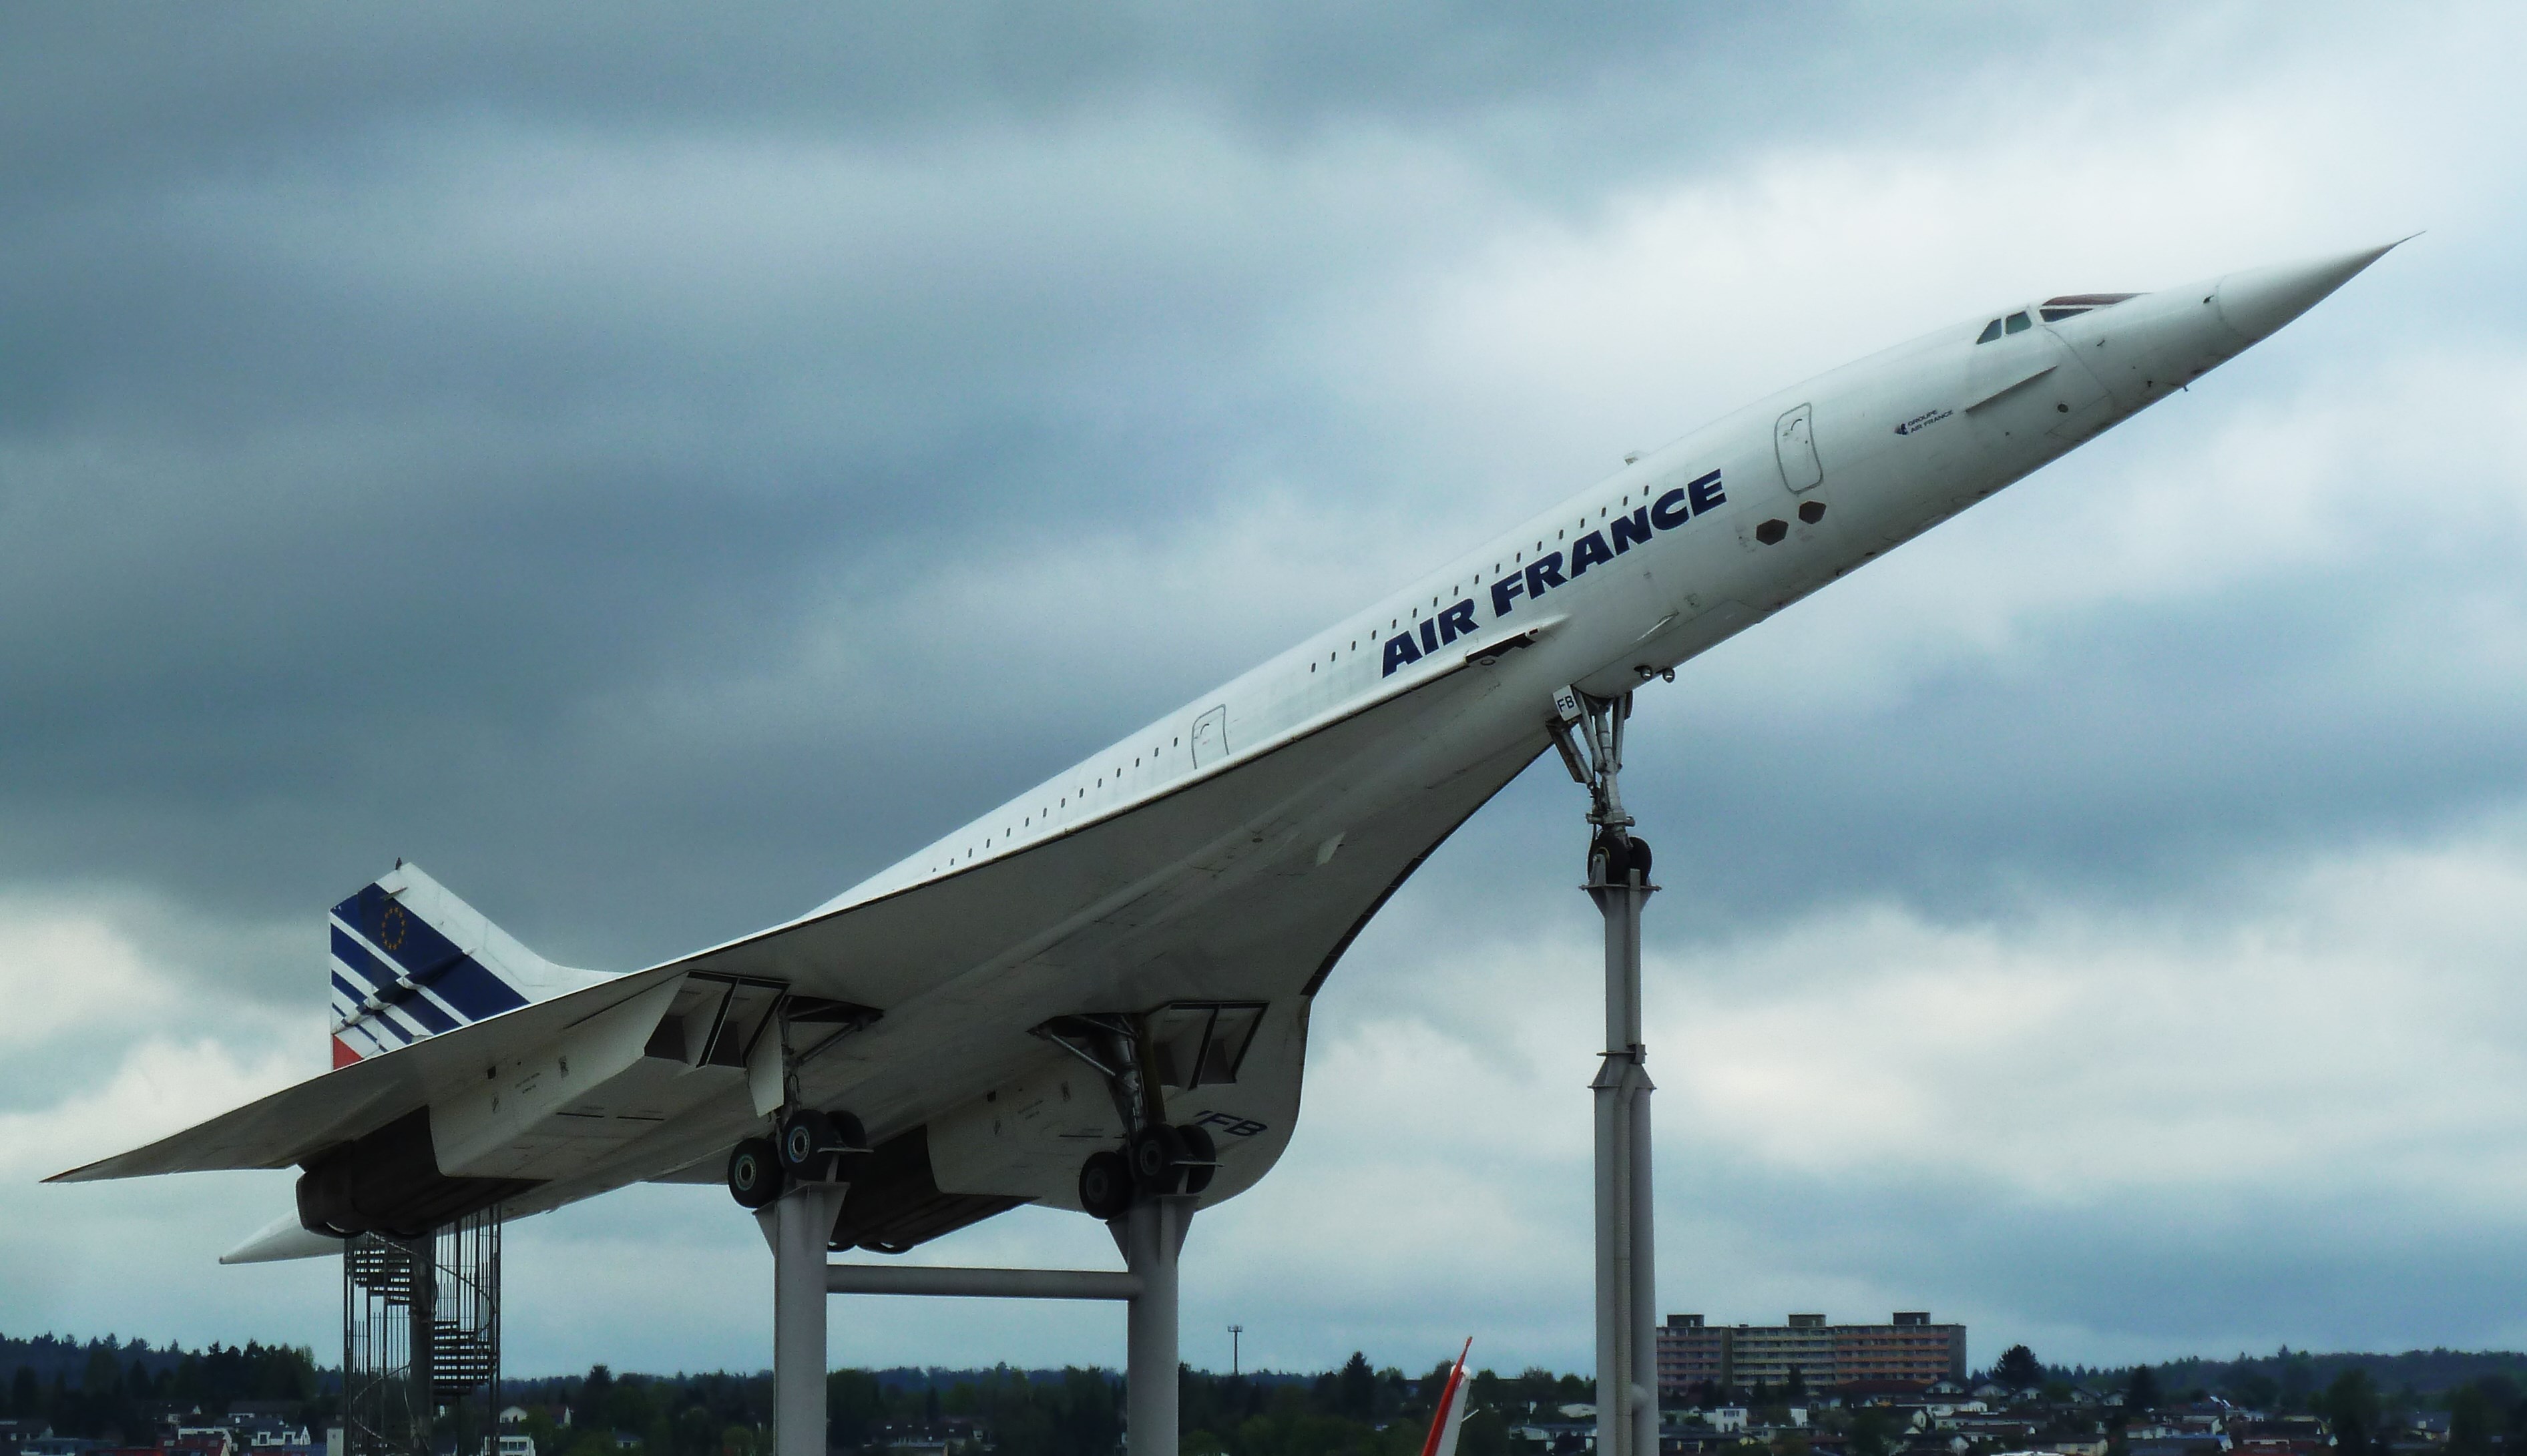 Concorde
Franz Überschall Passagierflugzeug